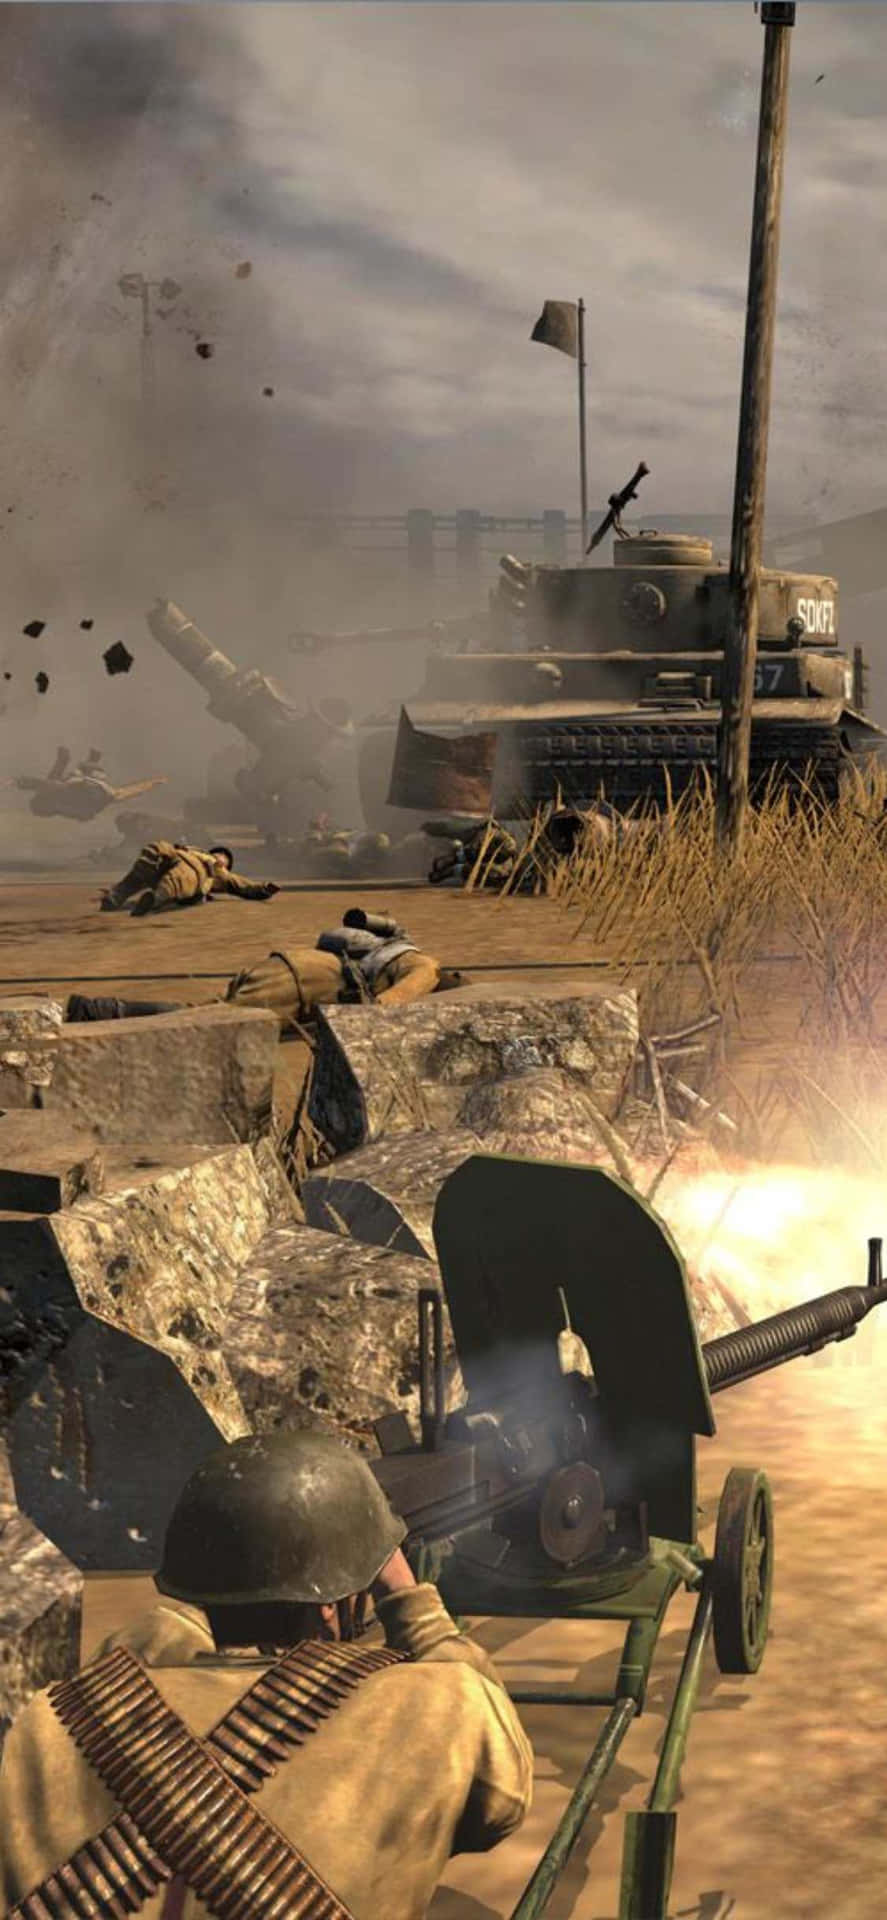 Iphonexs Bakgrund Med Company Of Heroes 2 - Armé Som Avfyrar Vapen.